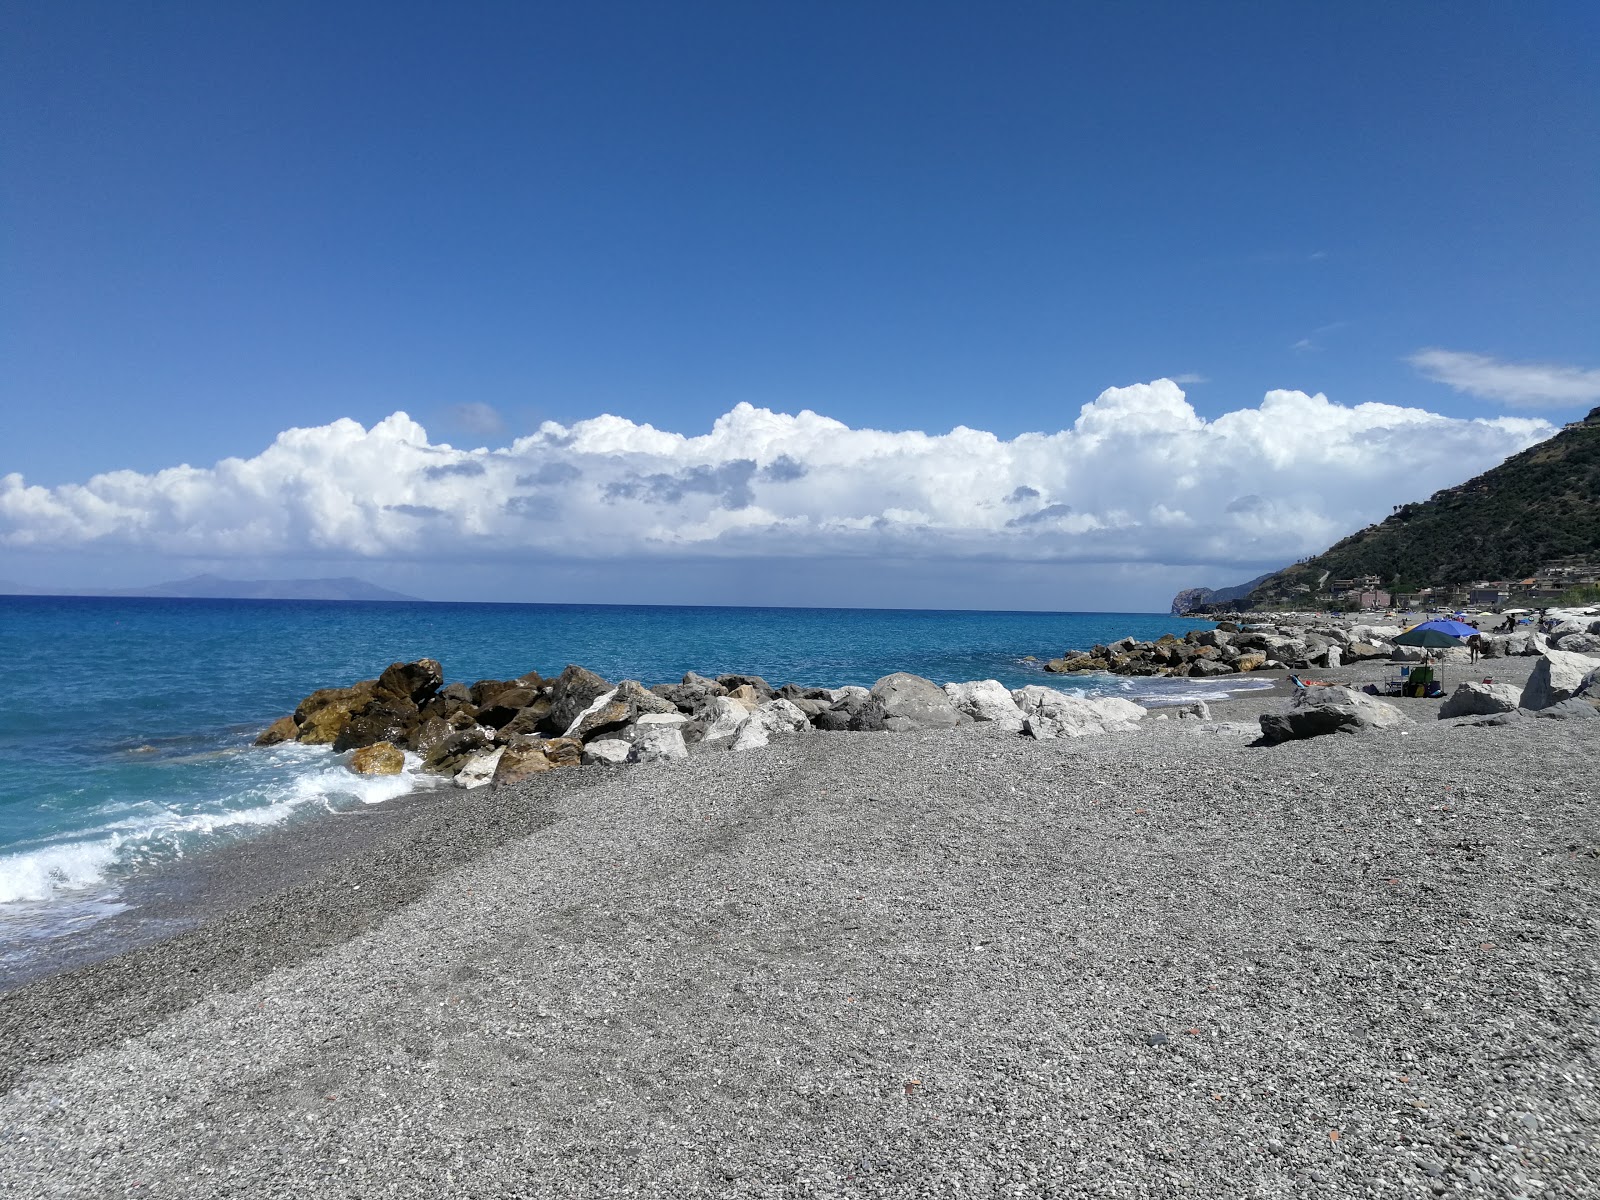 Zdjęcie Gliaca beach z poziomem czystości wysoki